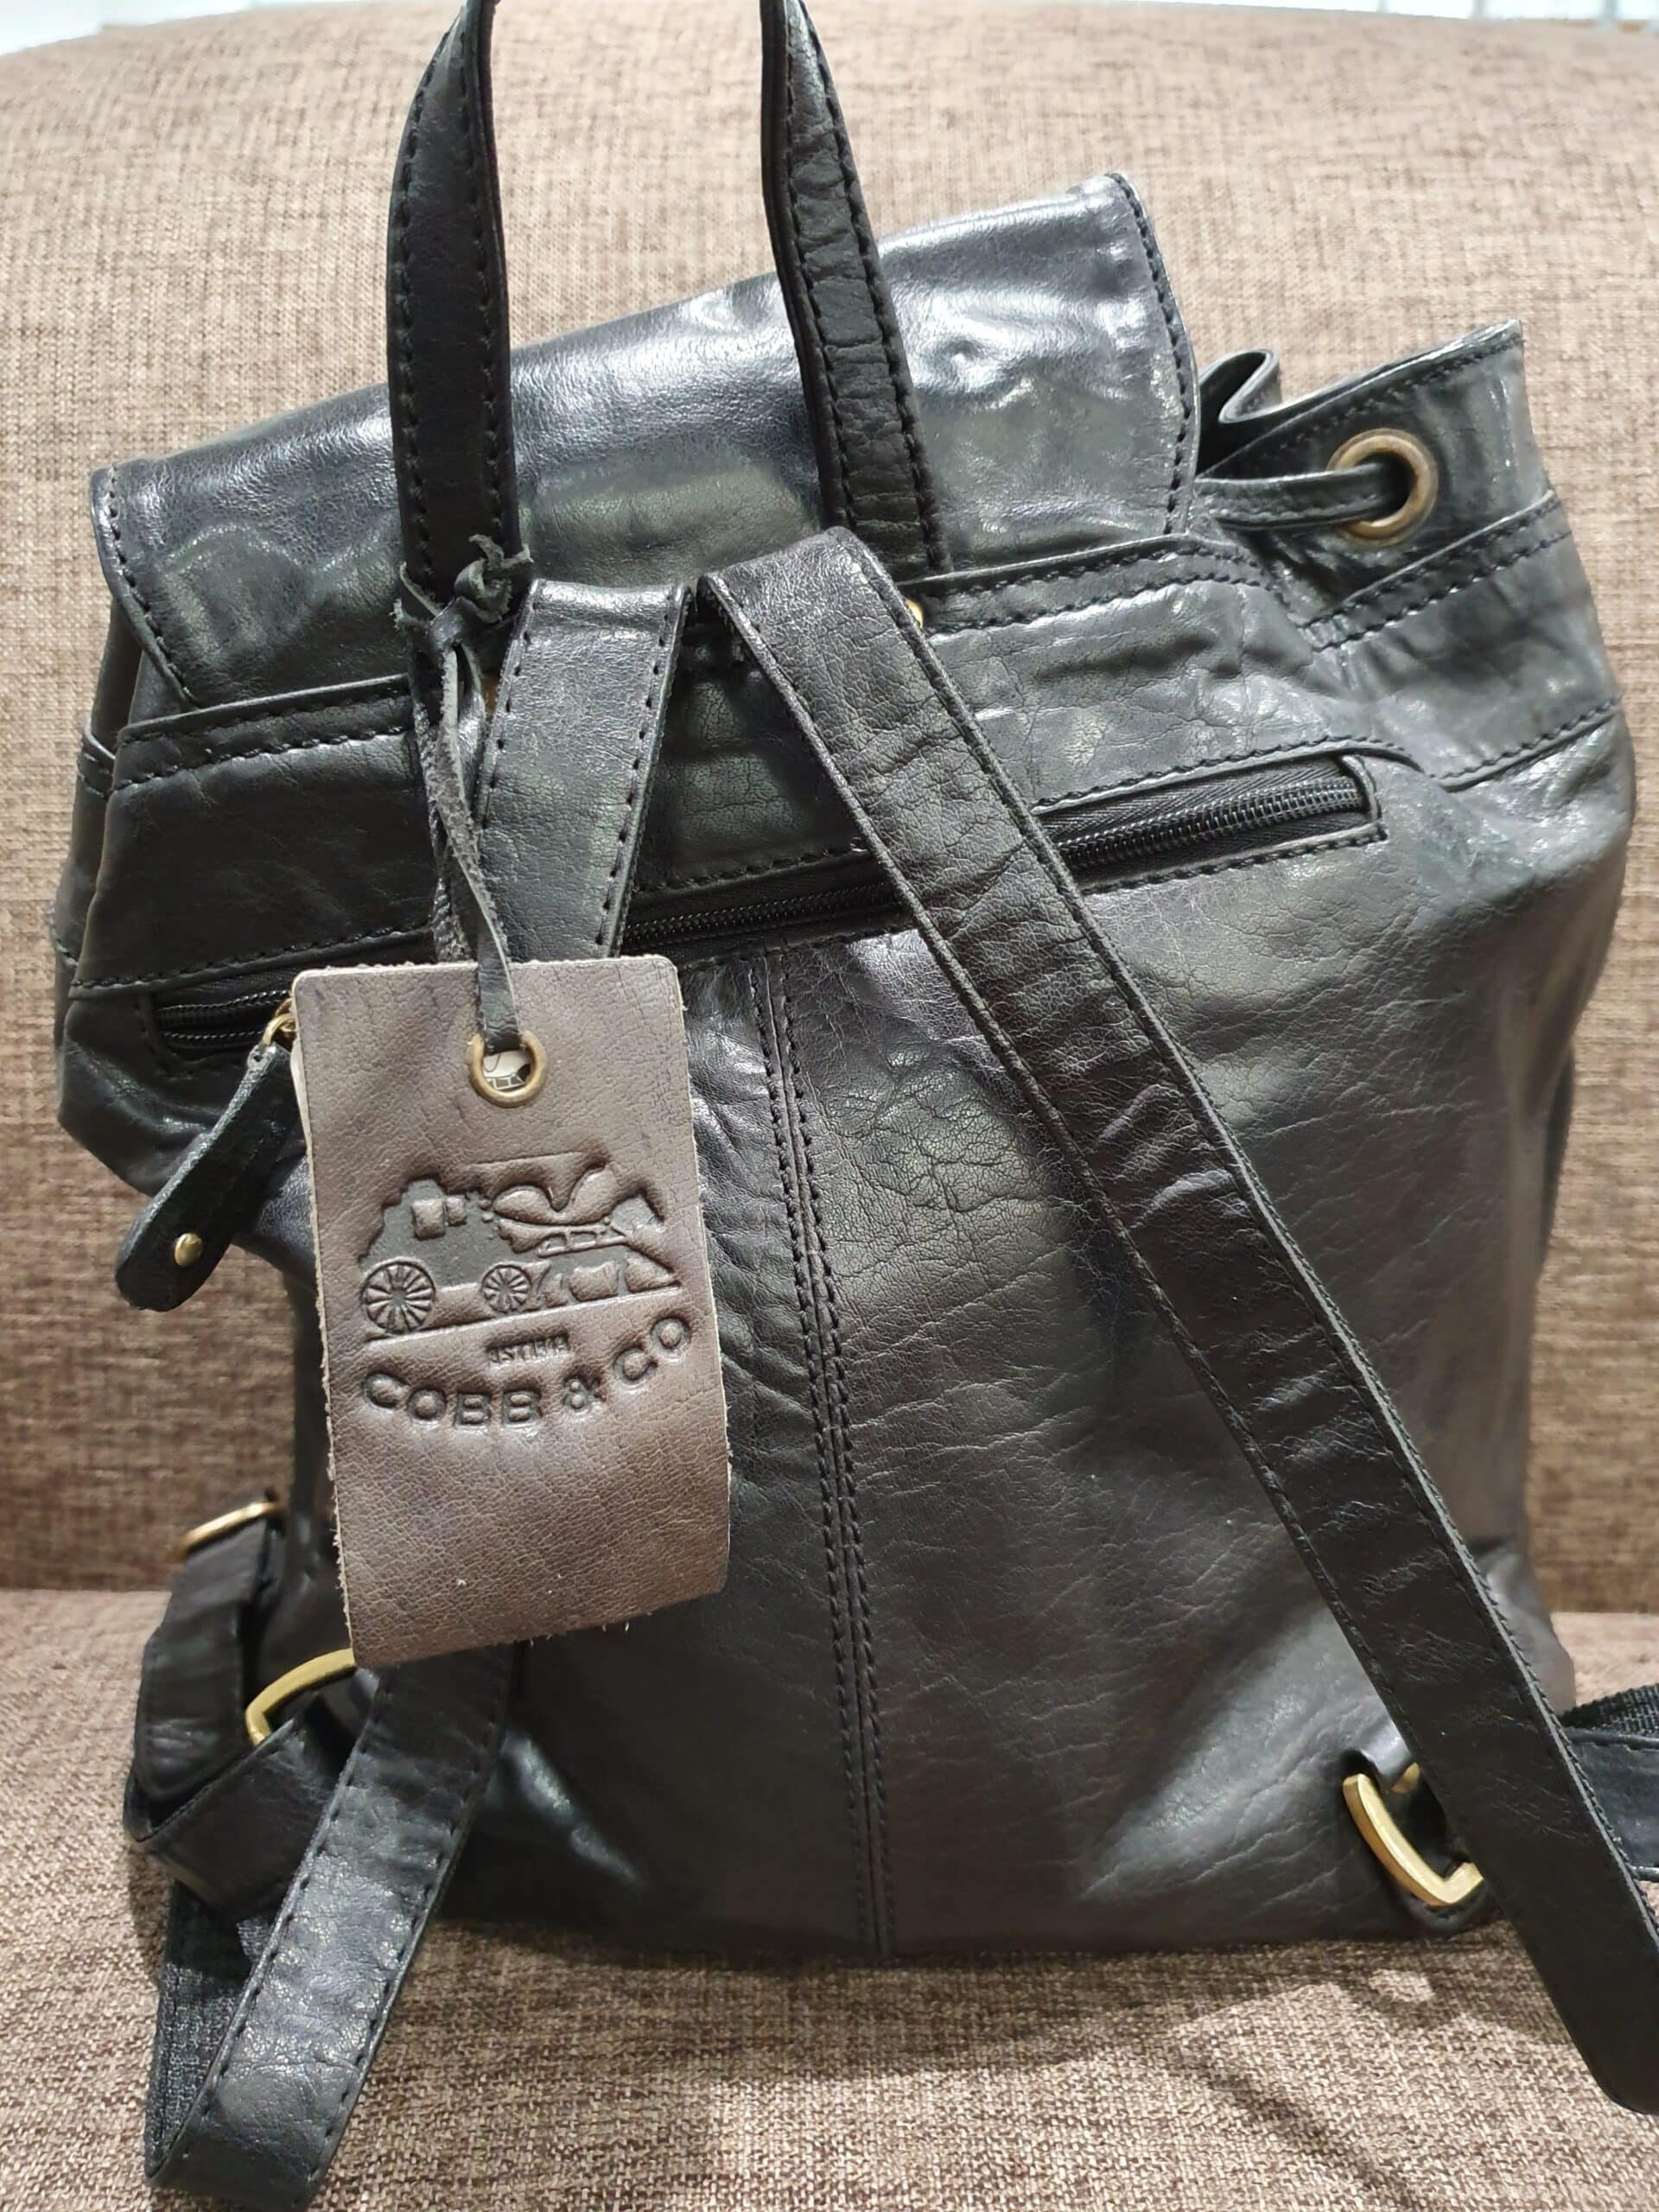 Cobb & Co Black Shoulder Bag - Leather Direct